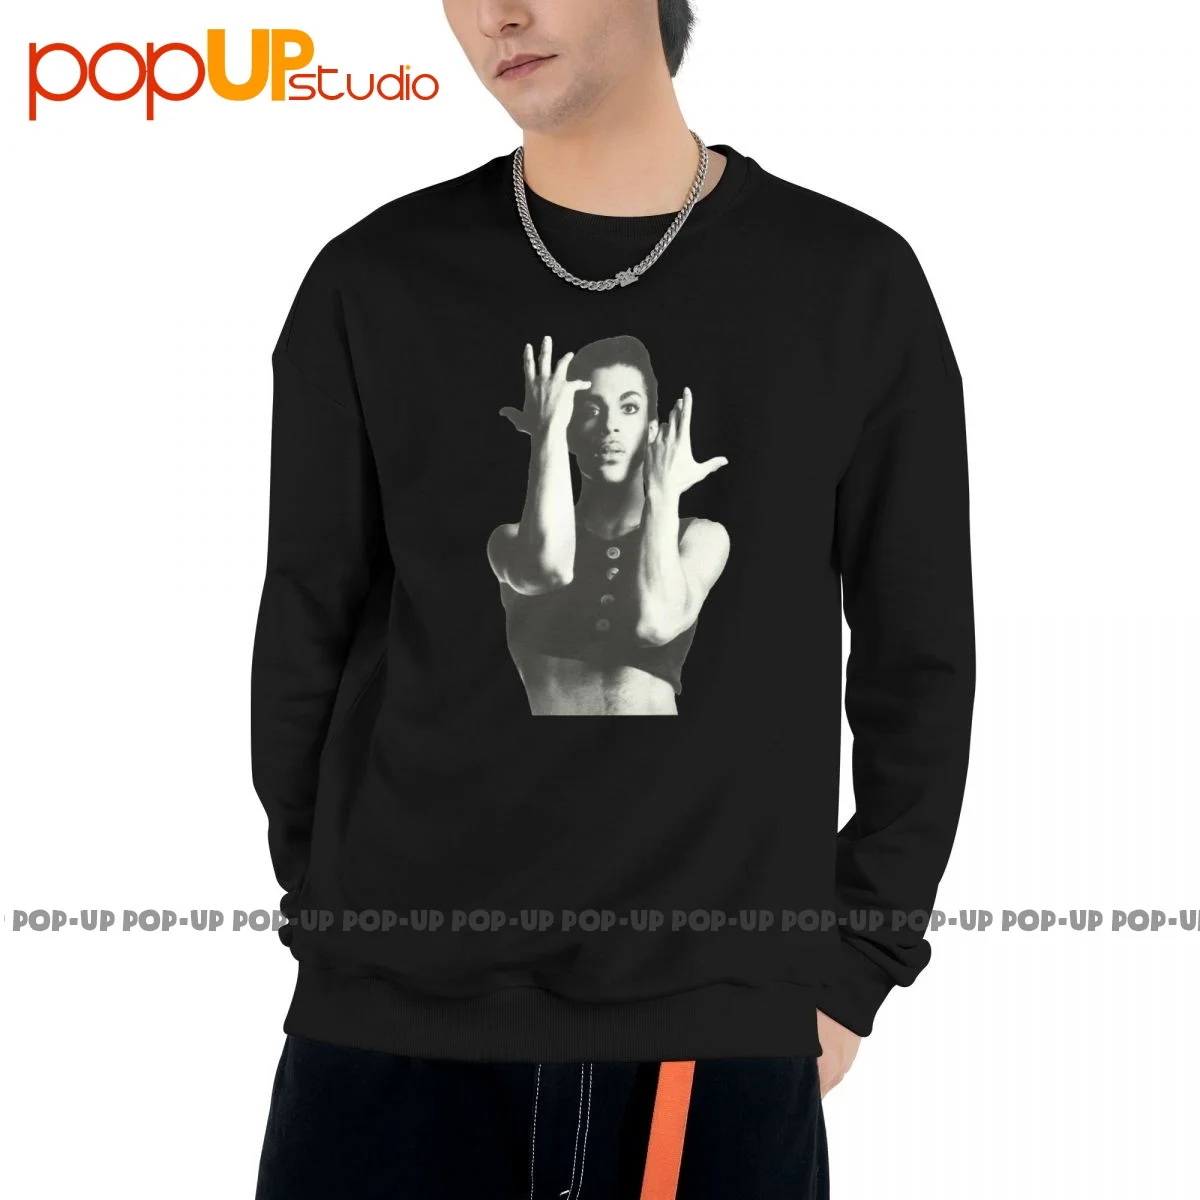 Толстовка с фирменным логотипом Prince Parade, пуловеры, рубашки Pop, Уникальная Классика, лучшее качество